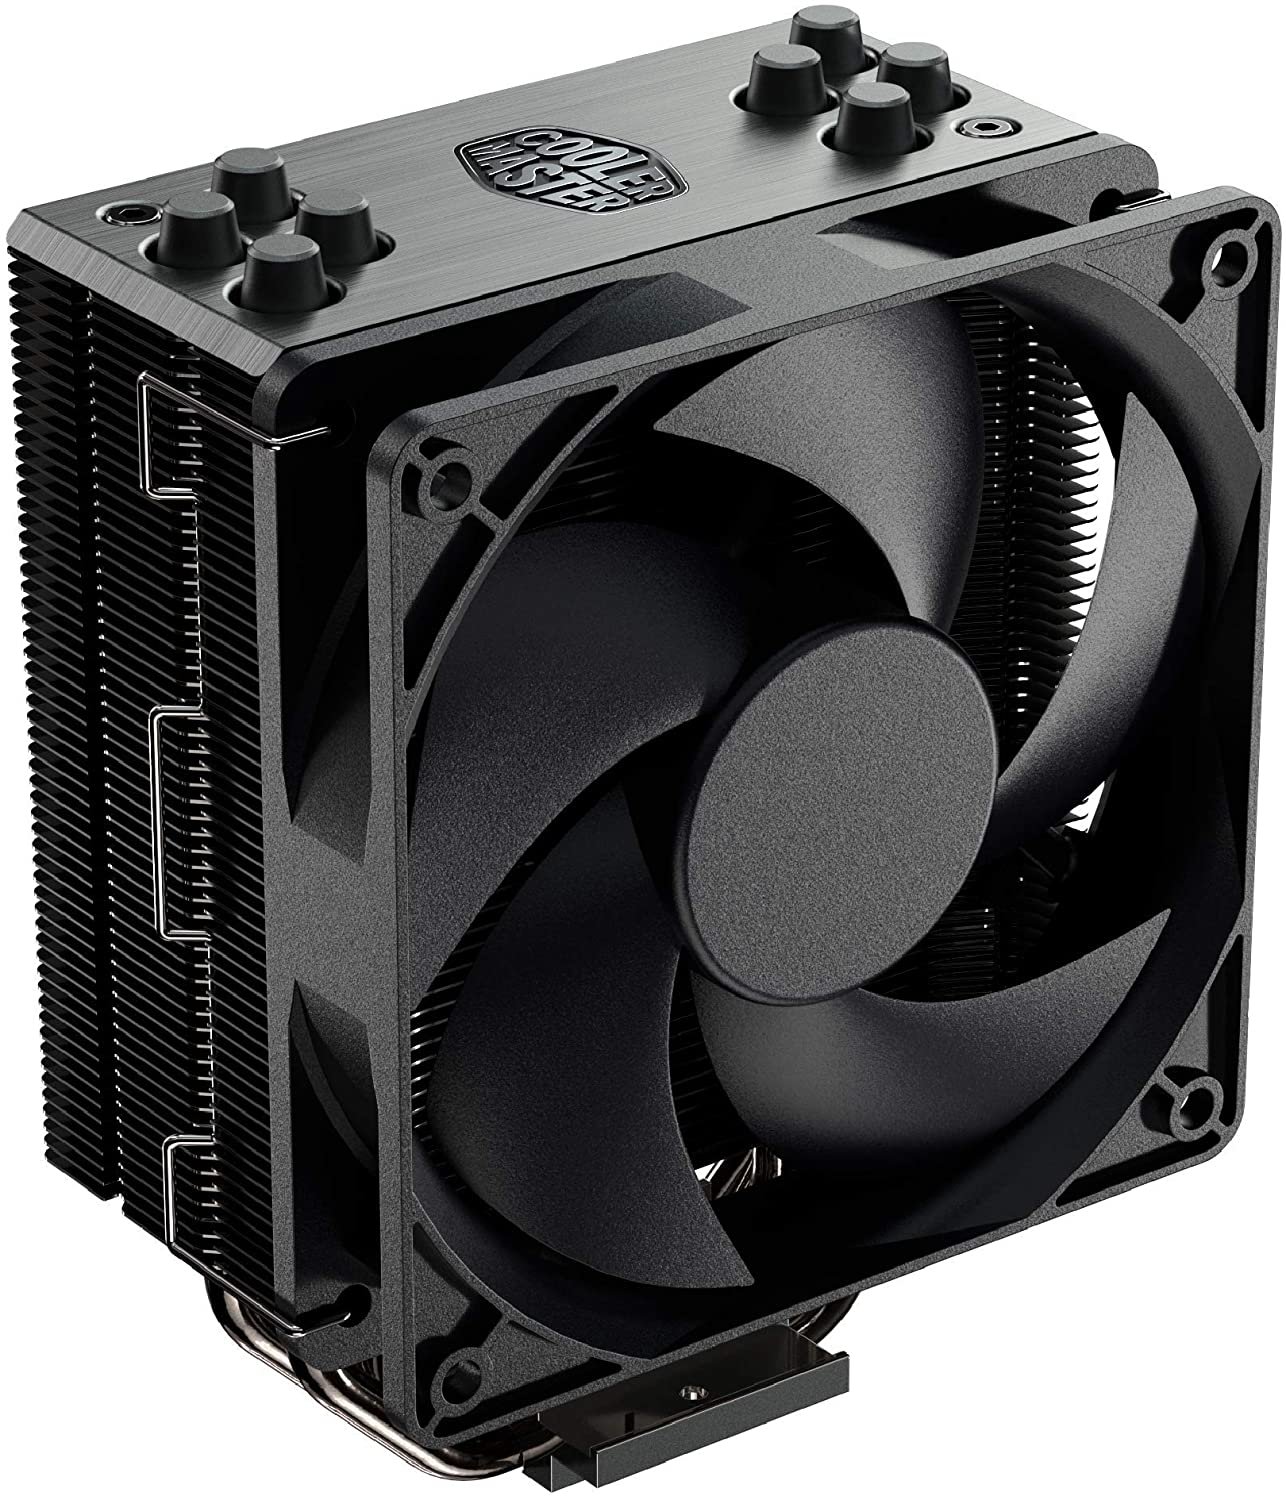 2 Cooler - Best $800 PC Build 2022